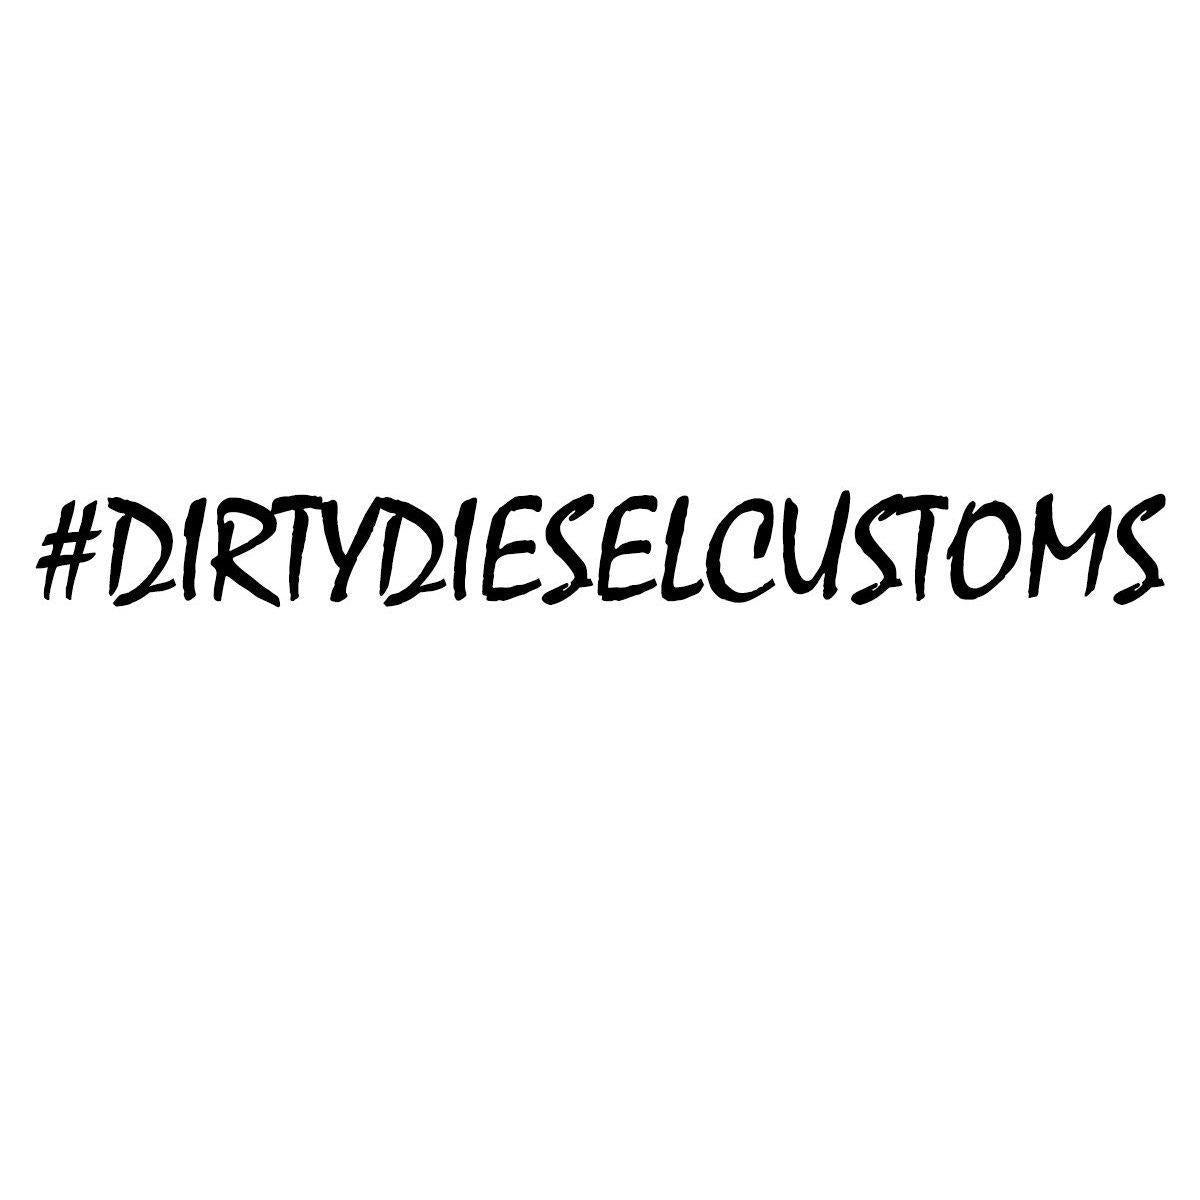 #dirtydieselcustoms-Sticker-Dirty Diesel Customs-#dirtydieselcustoms-2-Dirty Diesel Customs